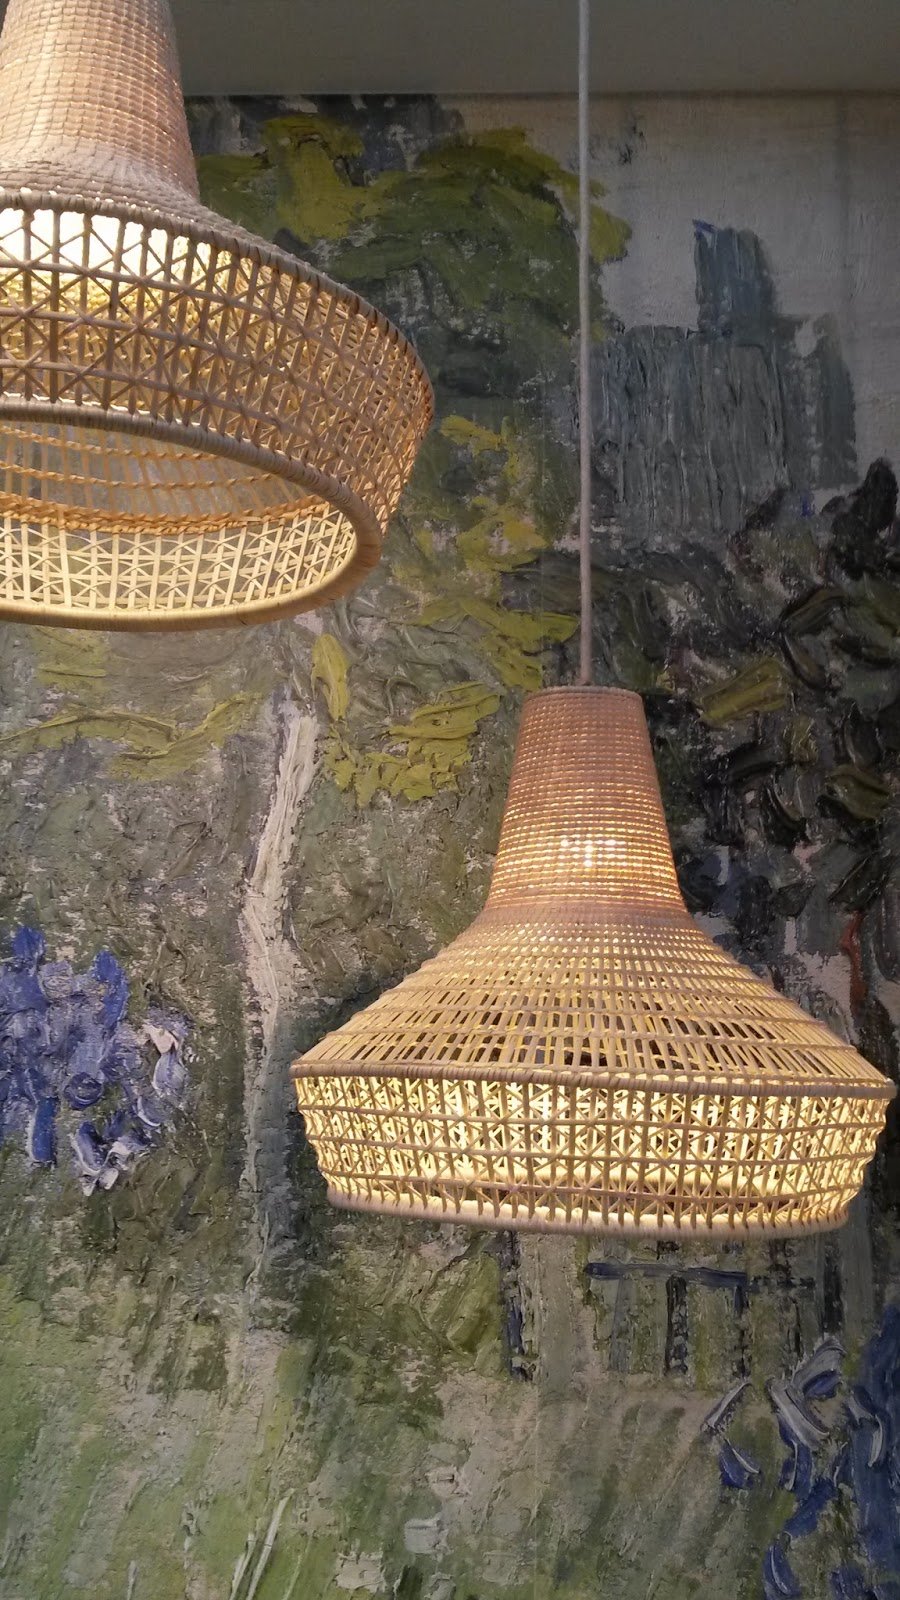 Подвесной светильник soffitto из ротанга